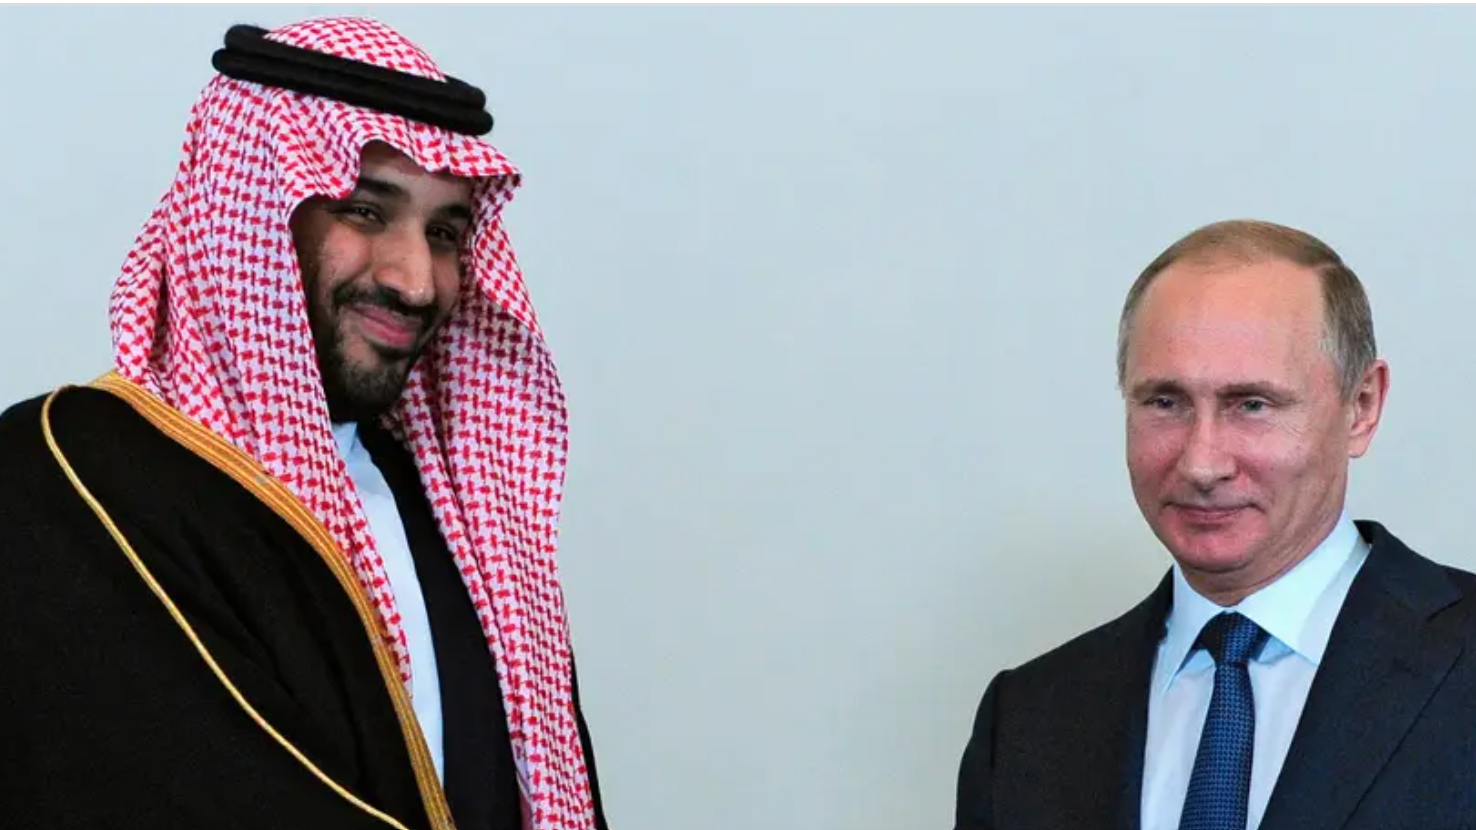 Putin Mohammed bin Salman